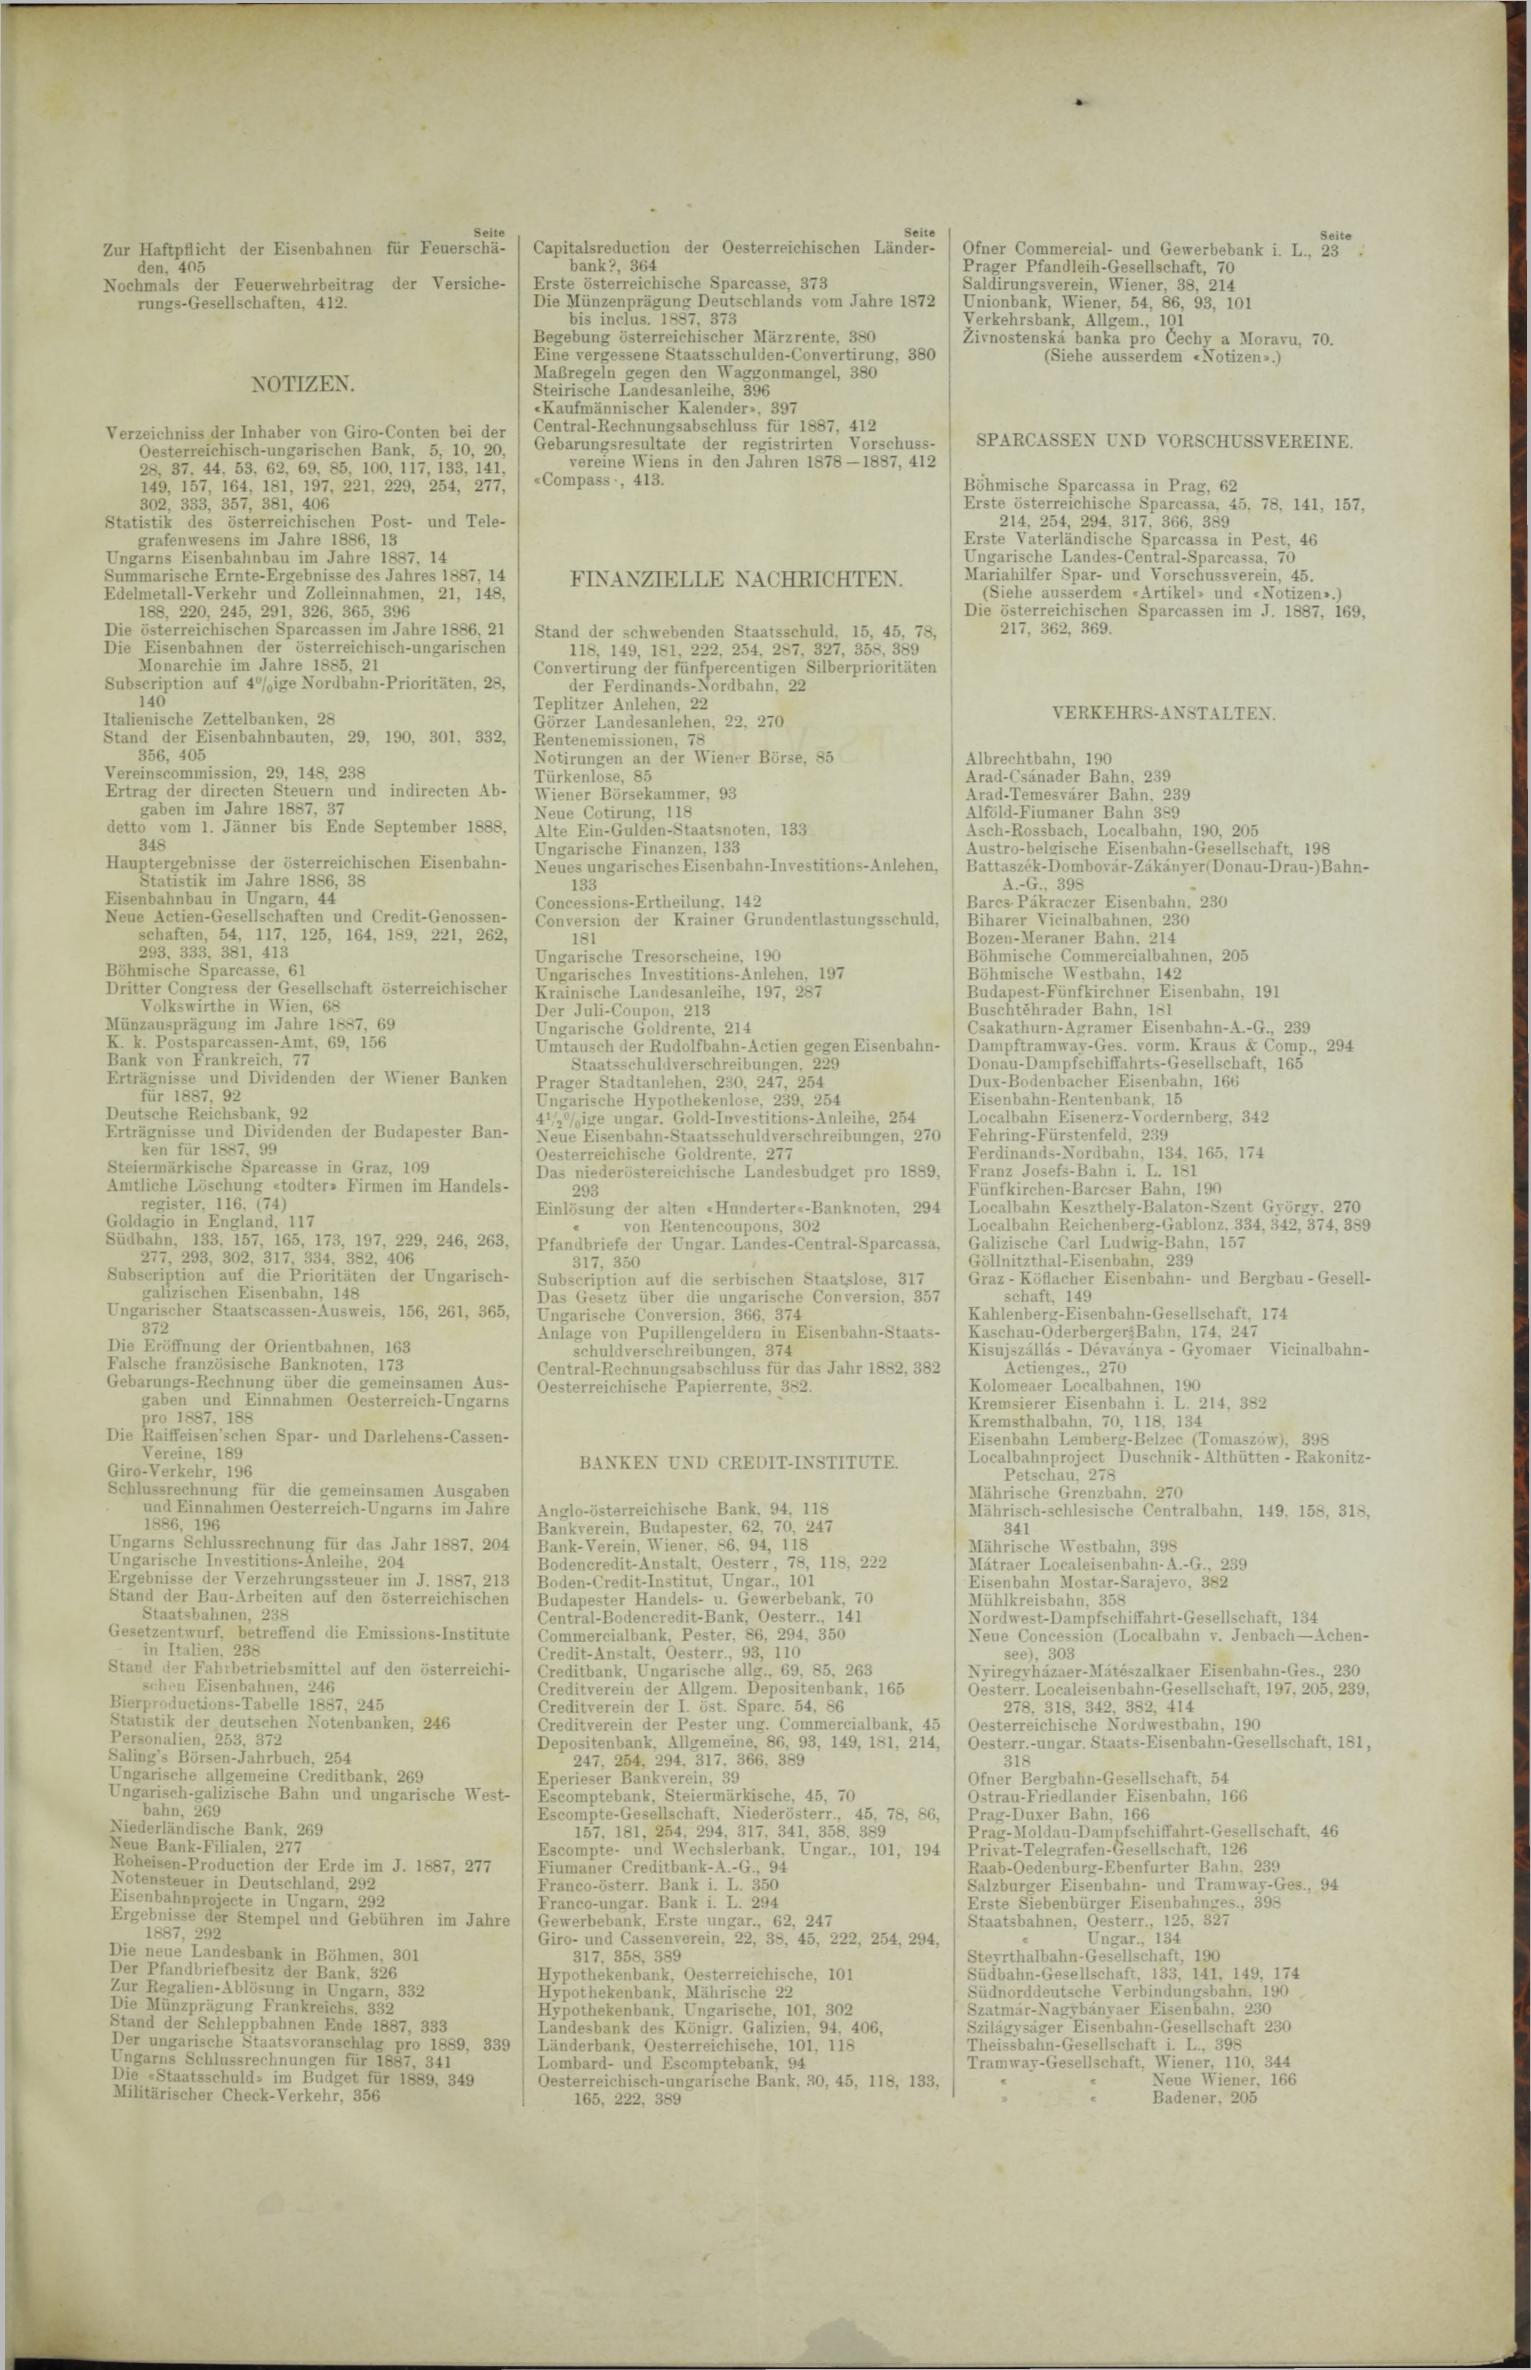 Der Tresor 04.10.1888 - Seite 11